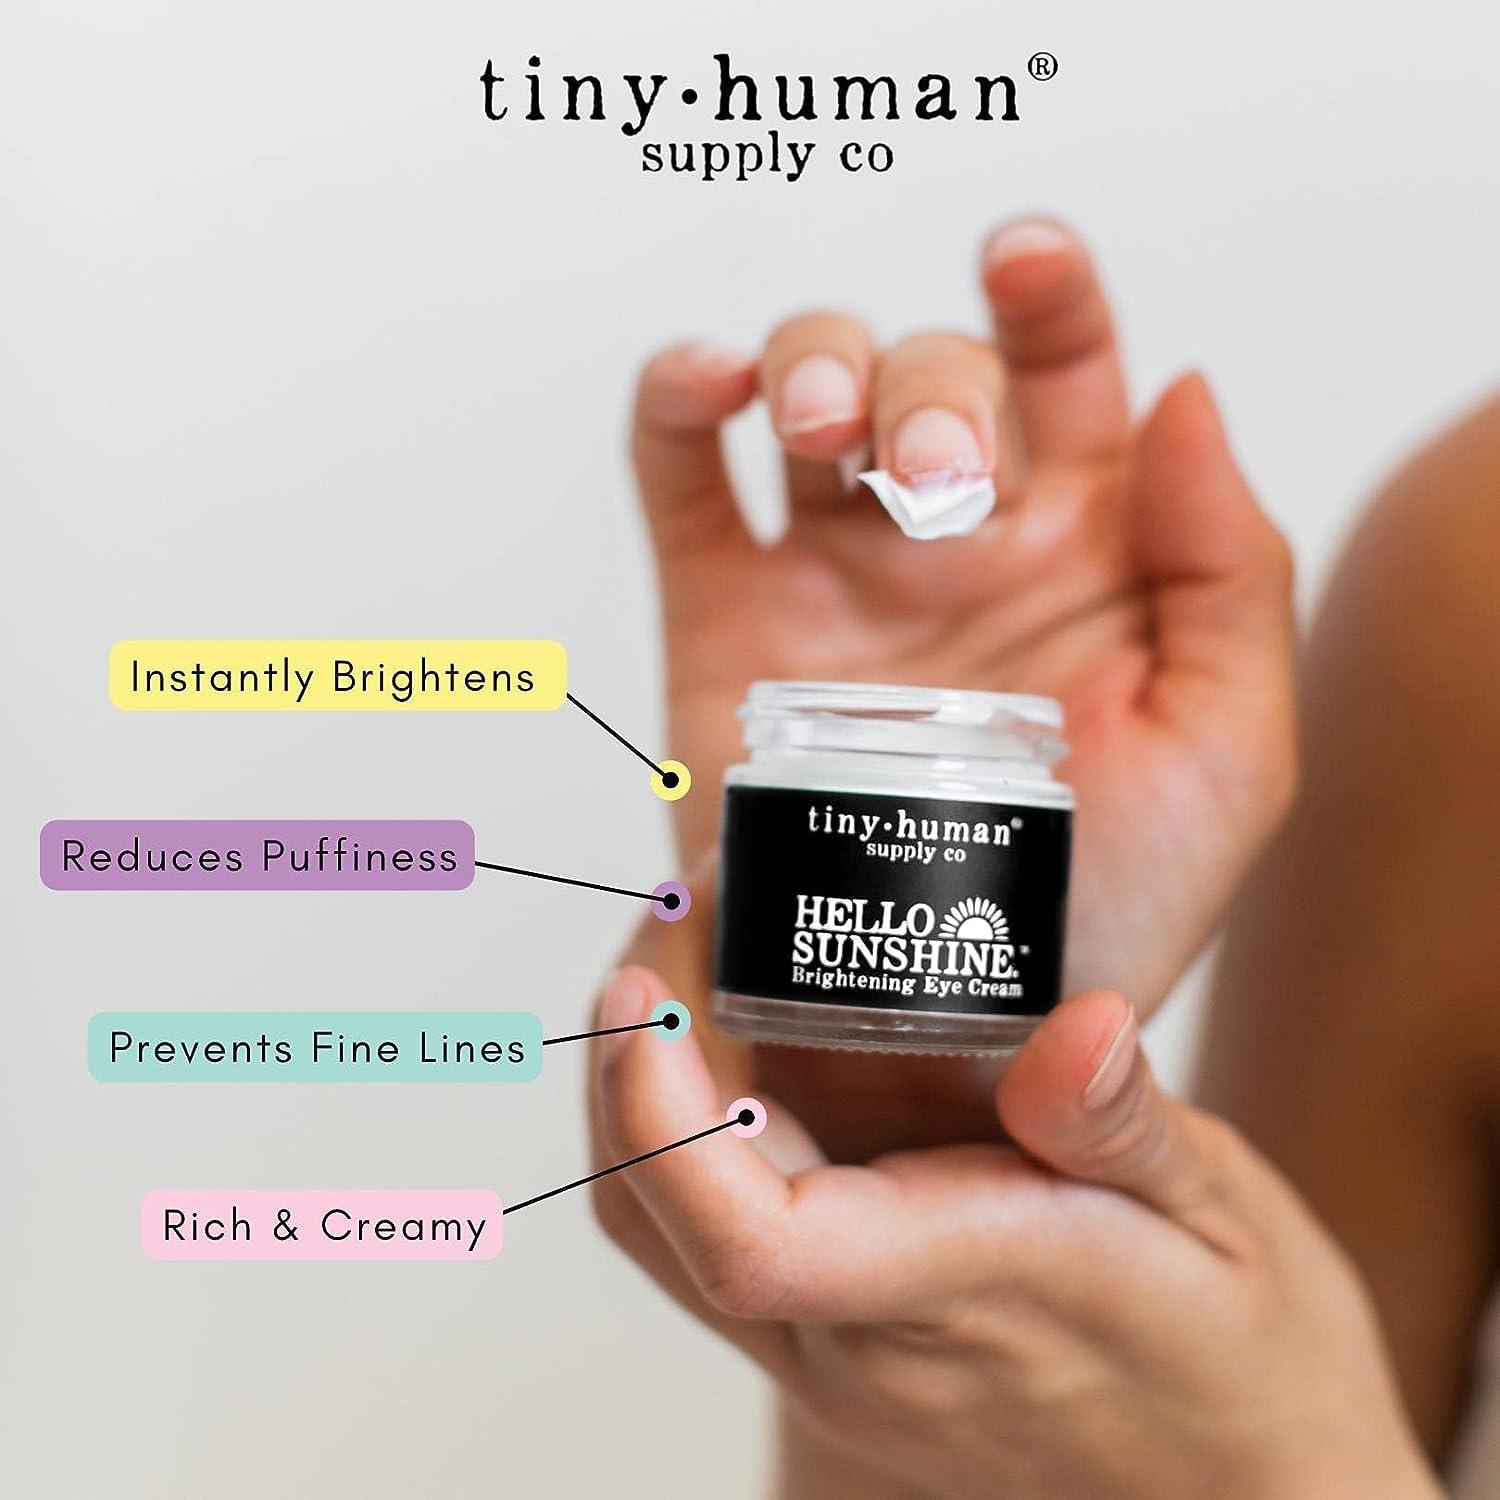 Tiny Human Supply Co